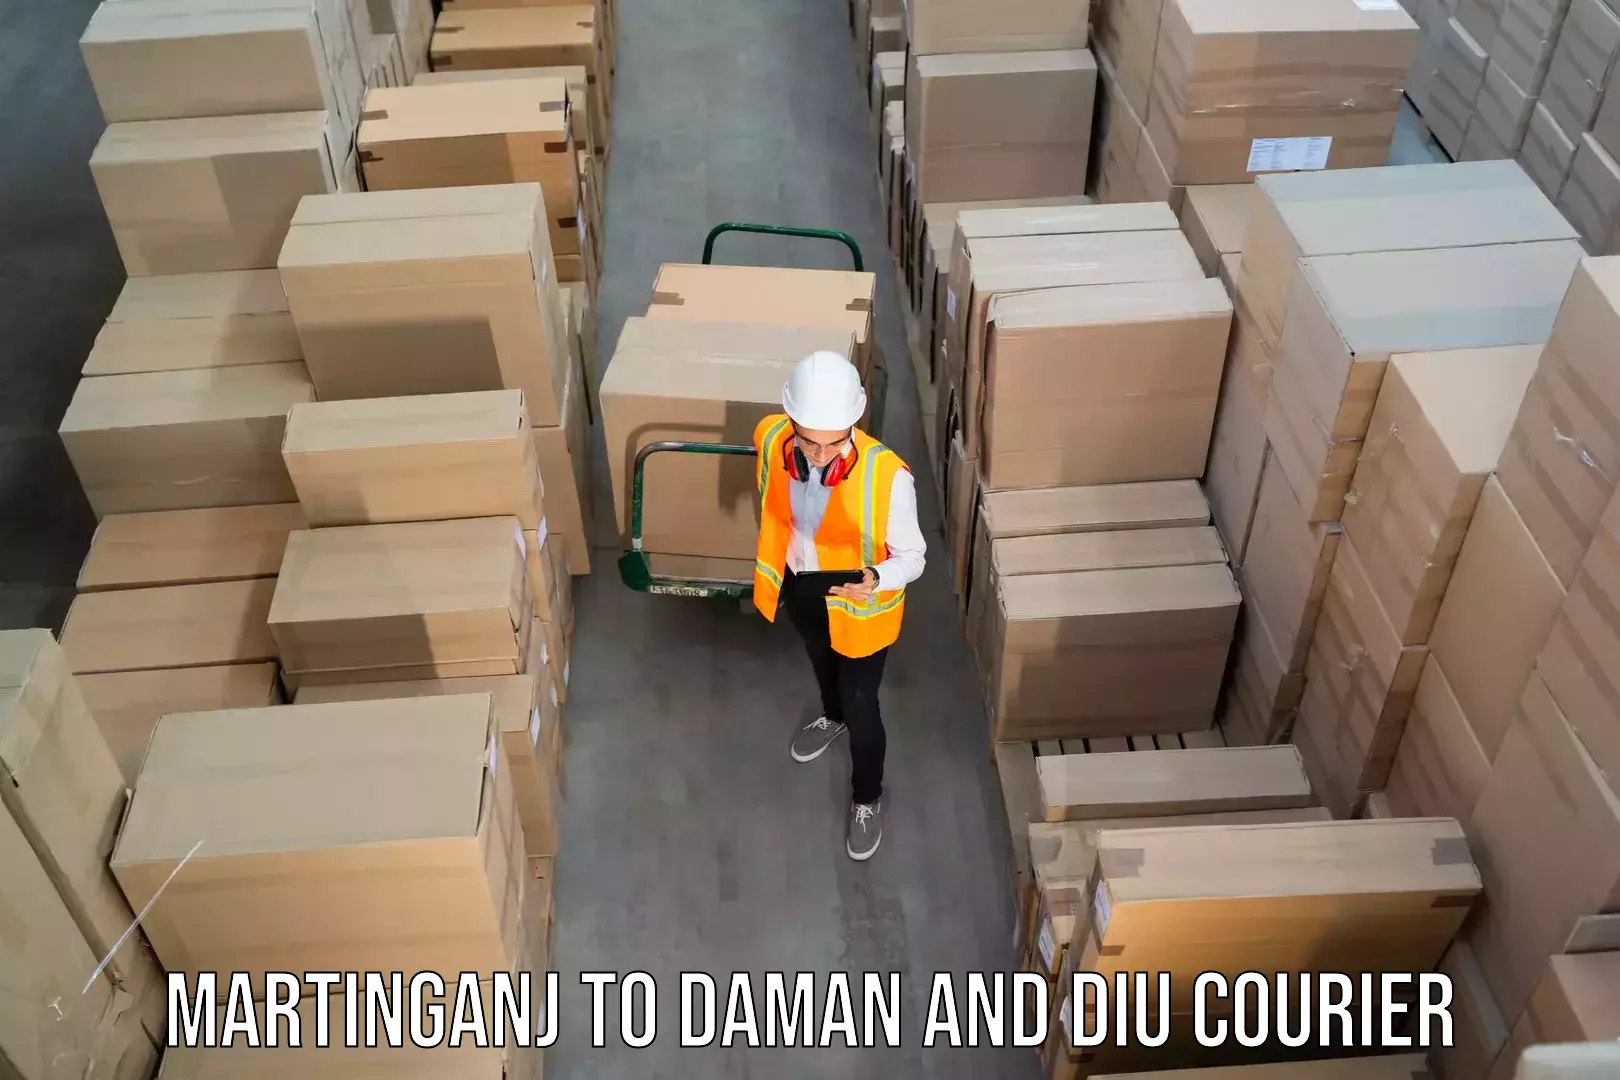 Cargo courier service Martinganj to Daman and Diu